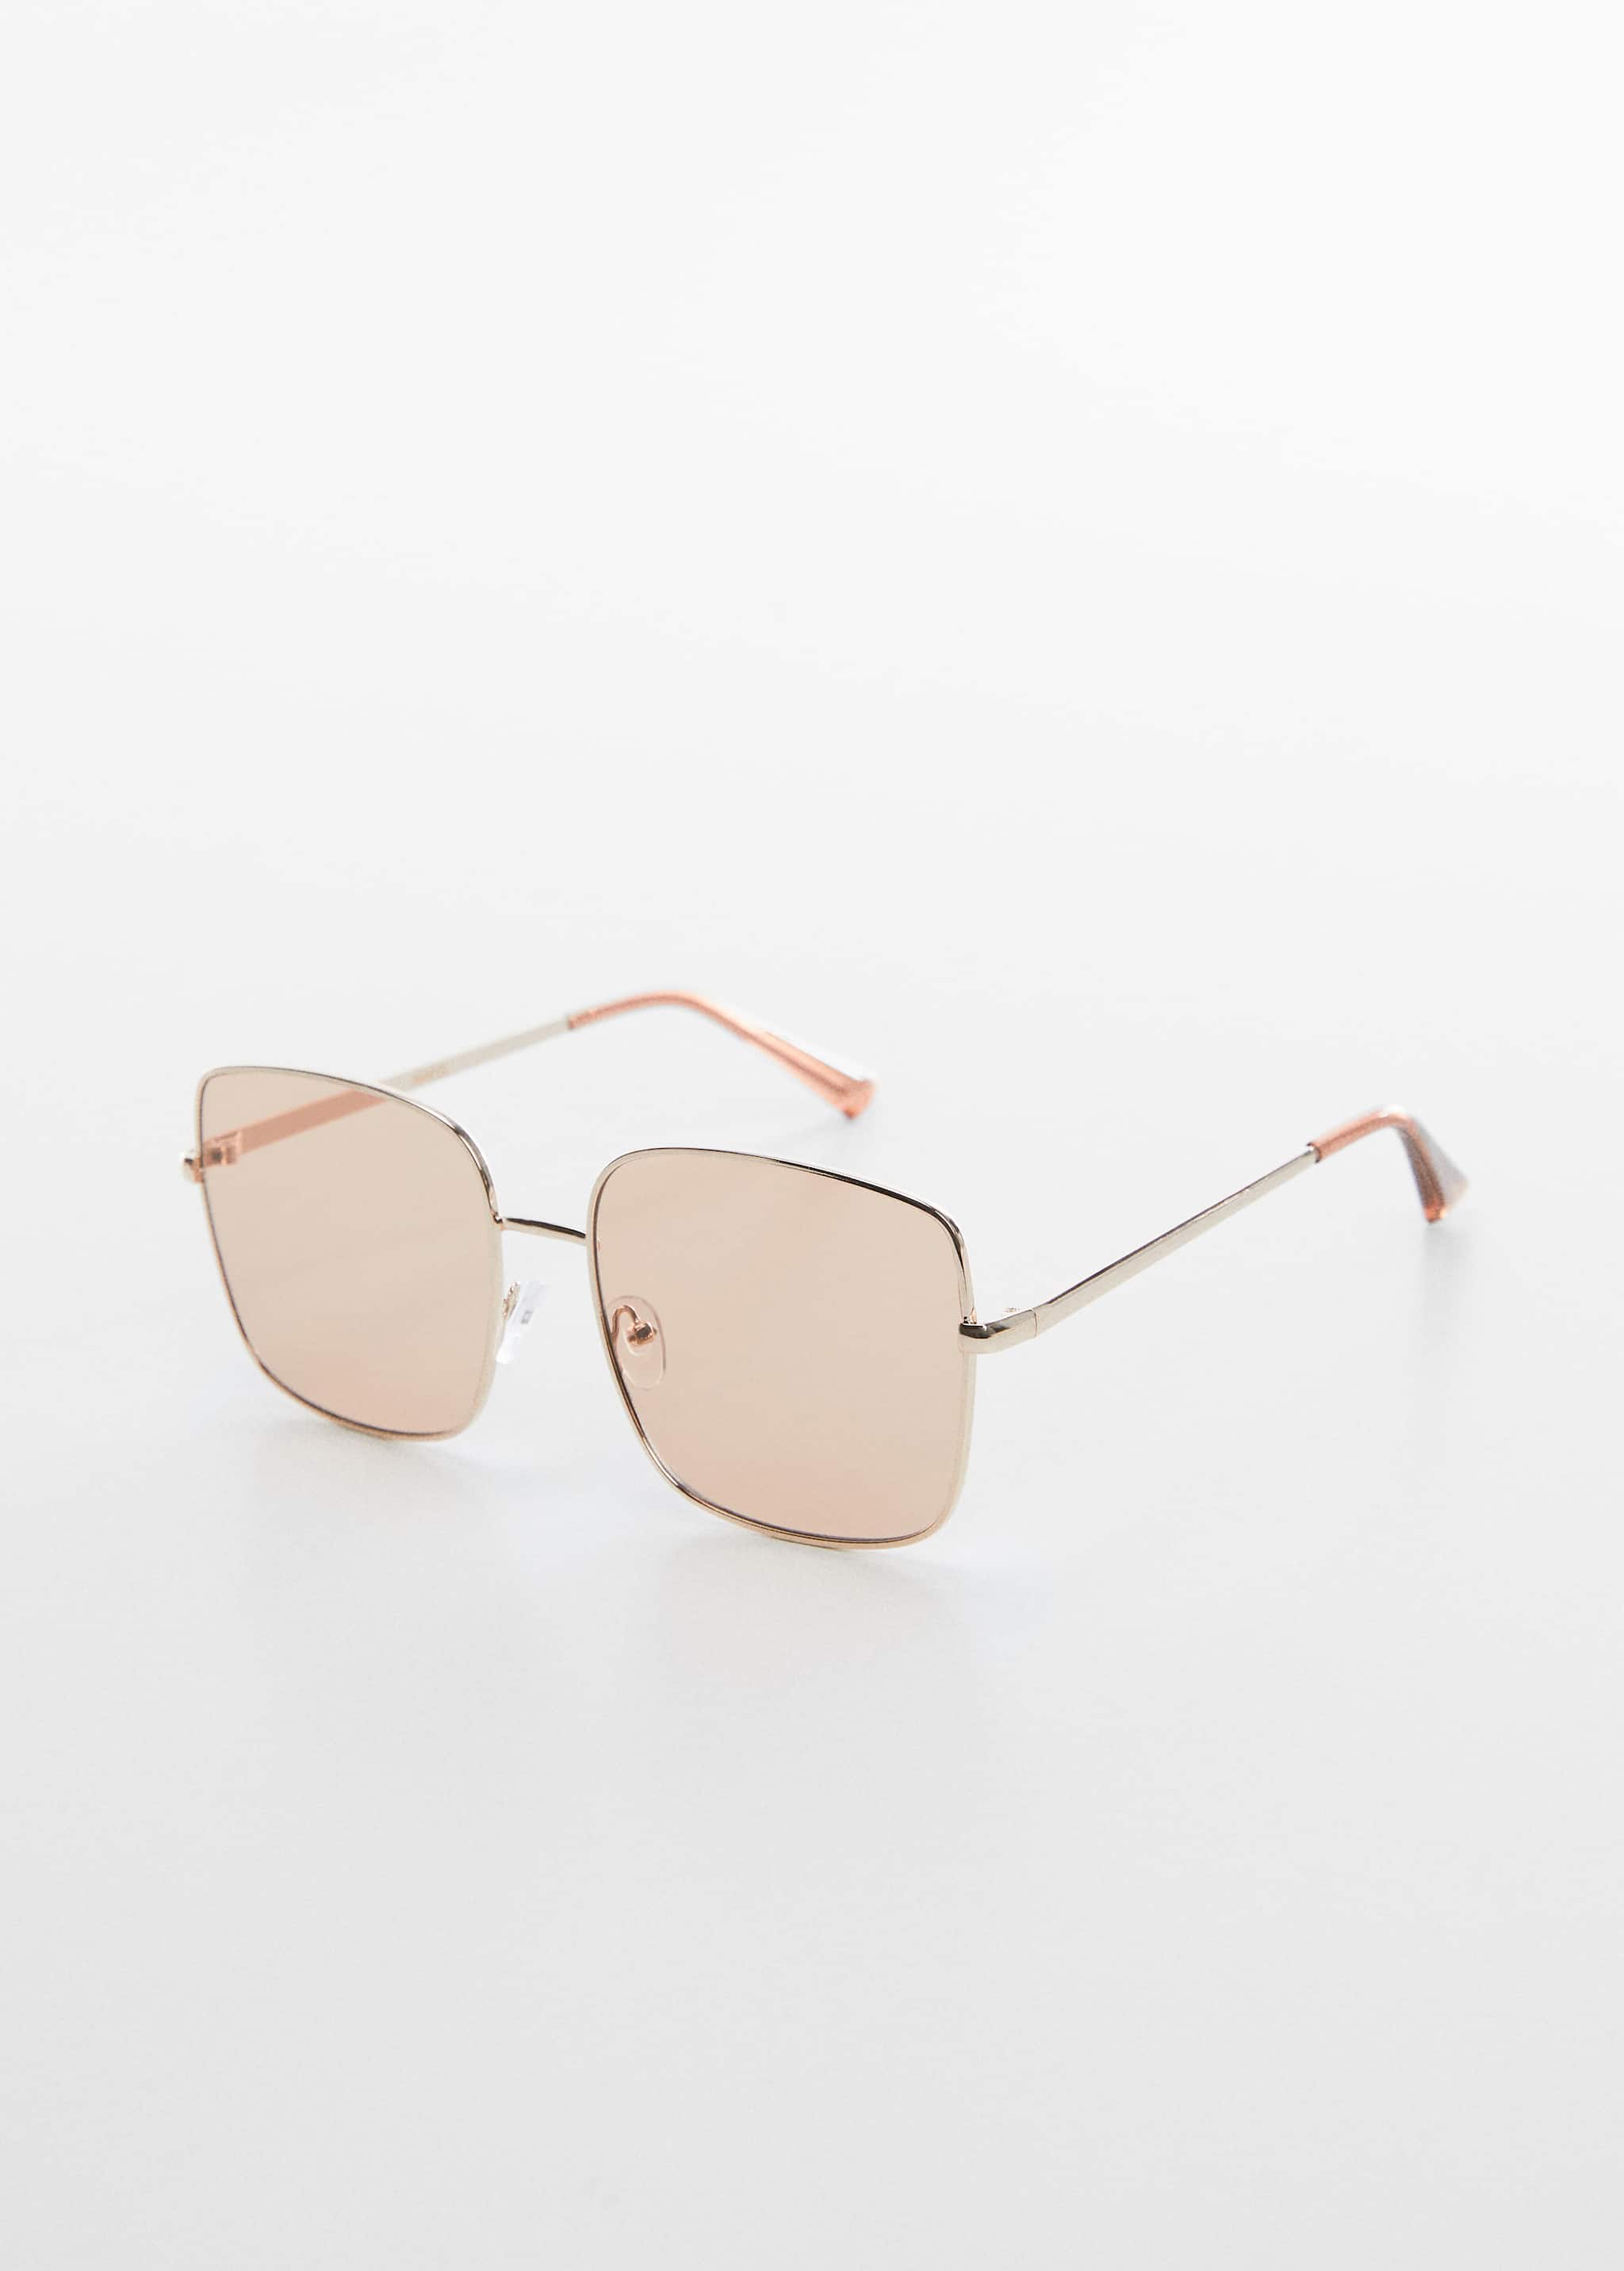 Square metallic frame sunglasses - Medium plane